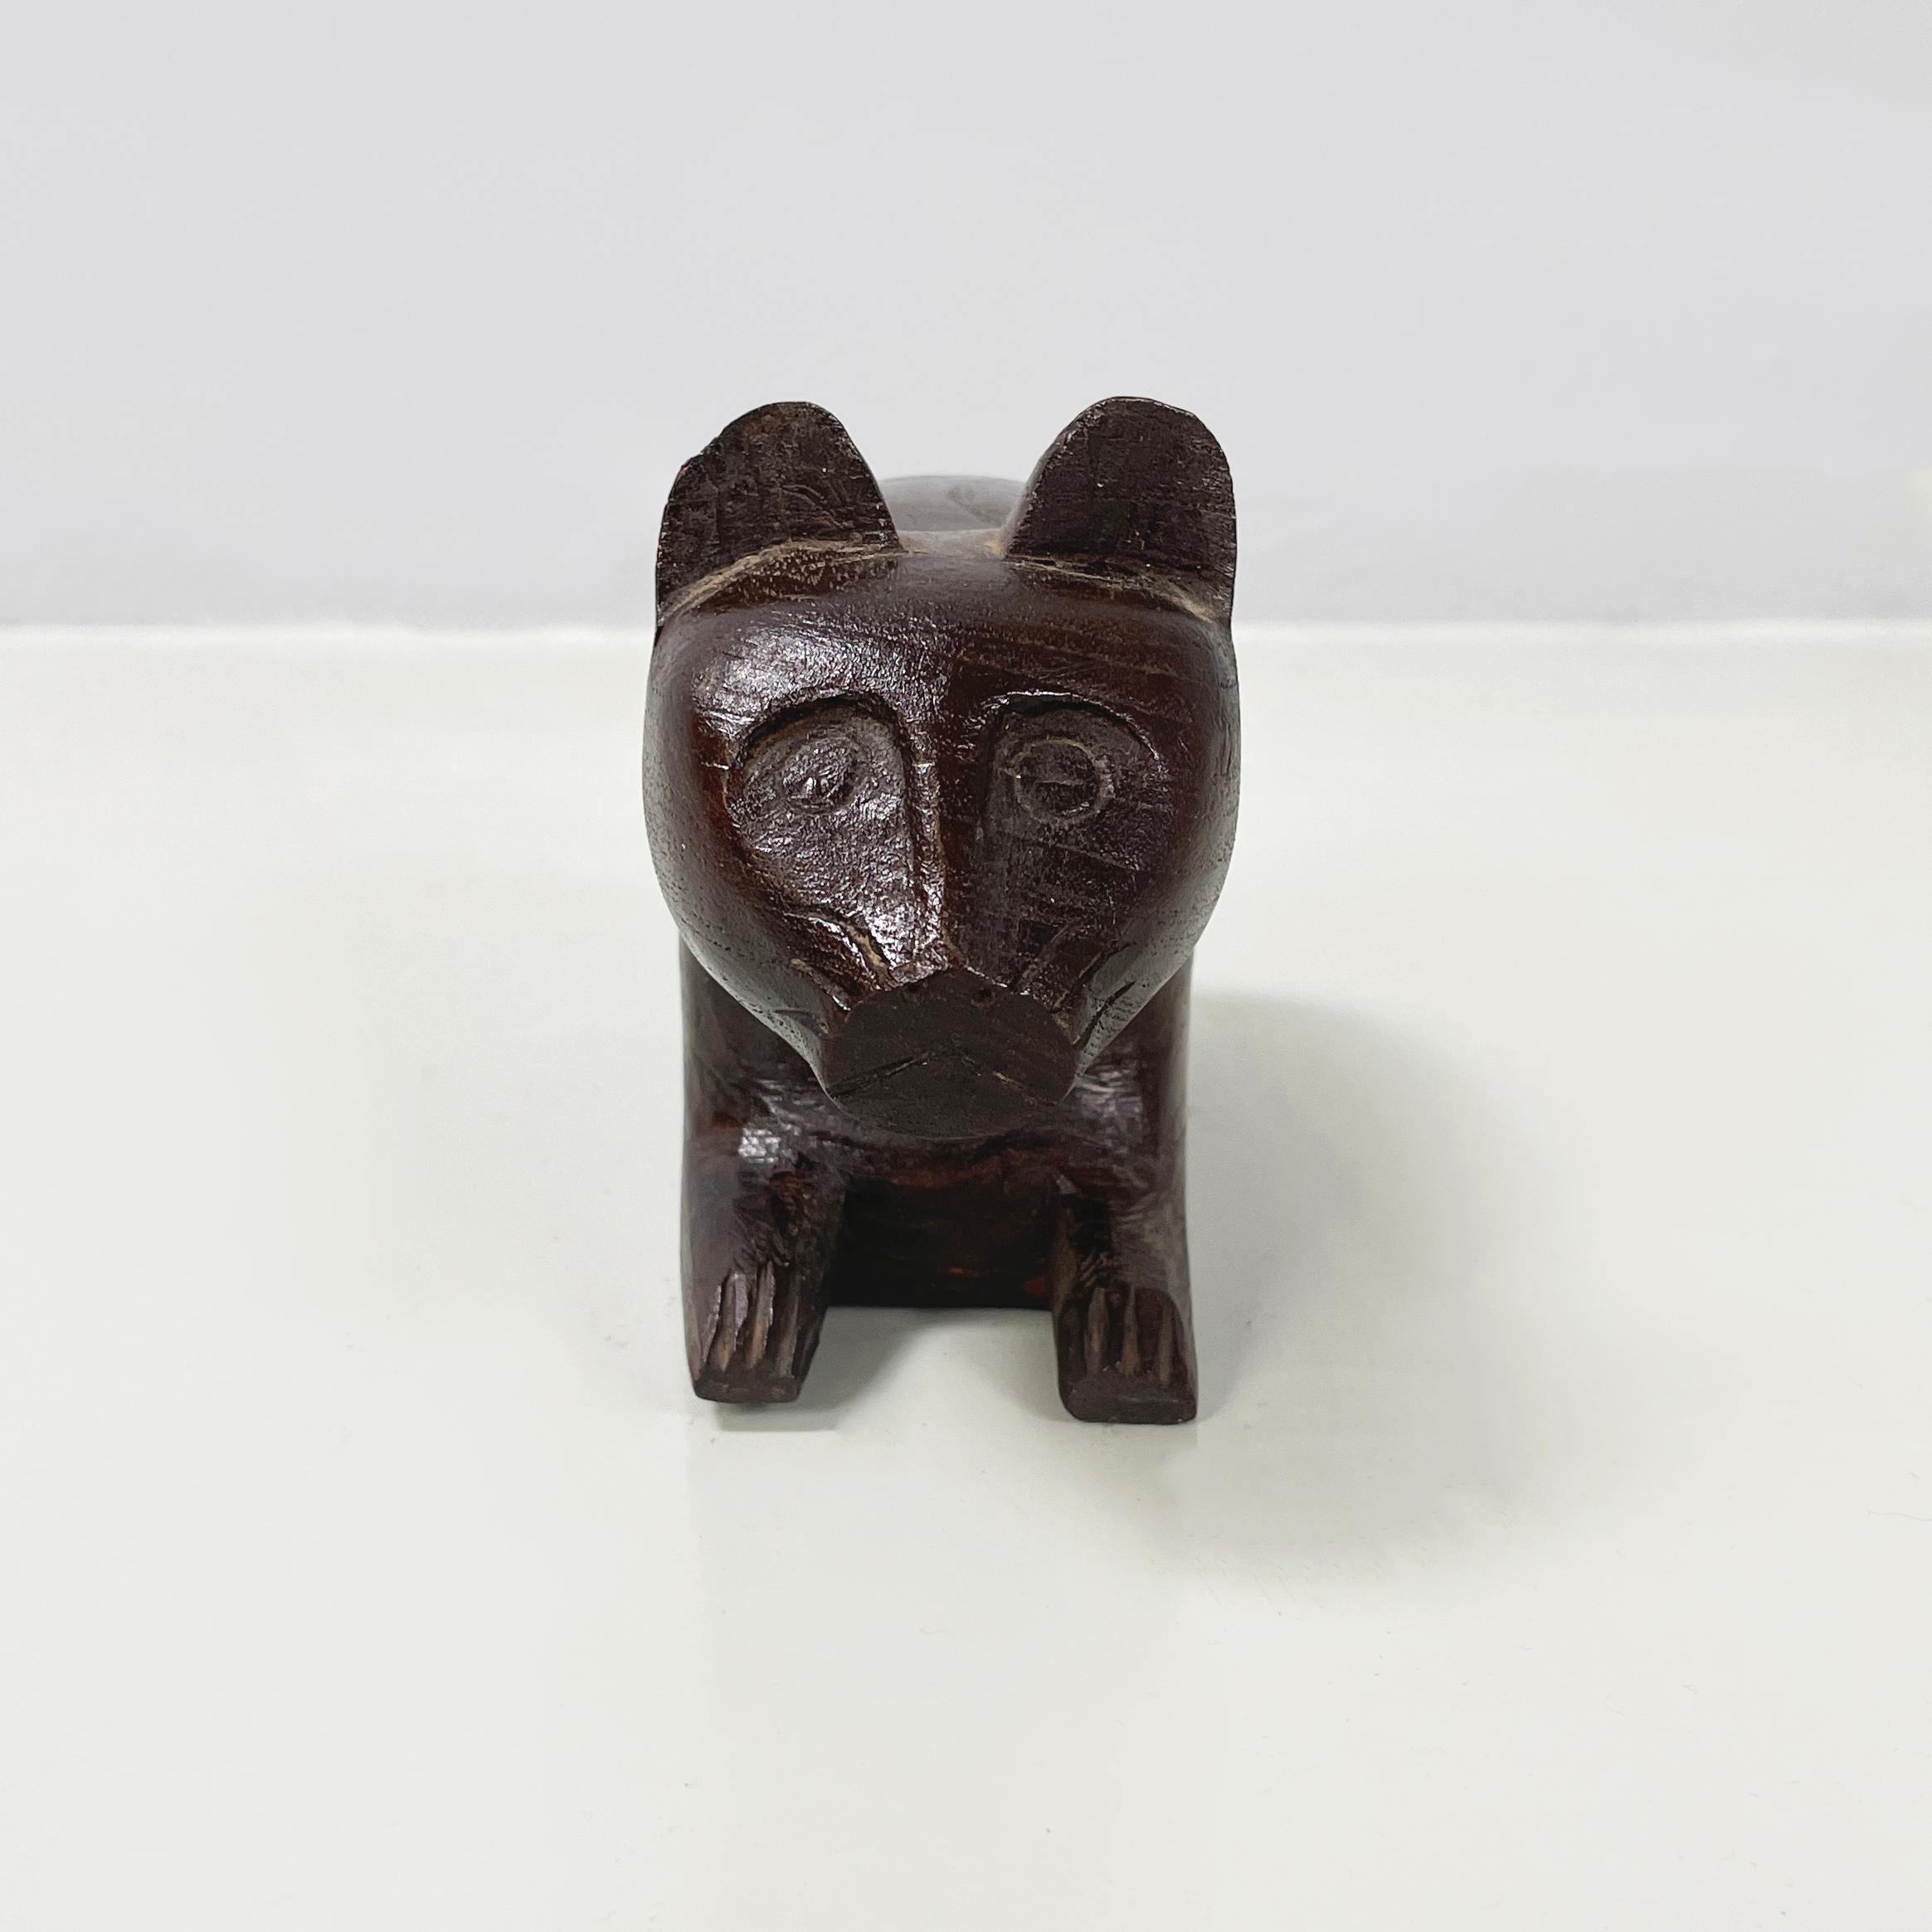 Ancienne boîte à bijoux ou porte-objets en bois pour chat, 1920
Boîte à bijoux avec compartiment rétractable en forme de chat couché, entièrement en bois. Les traits du chat sont stylisés. Le compartiment coulissant se trouve sur le ventre du chat.